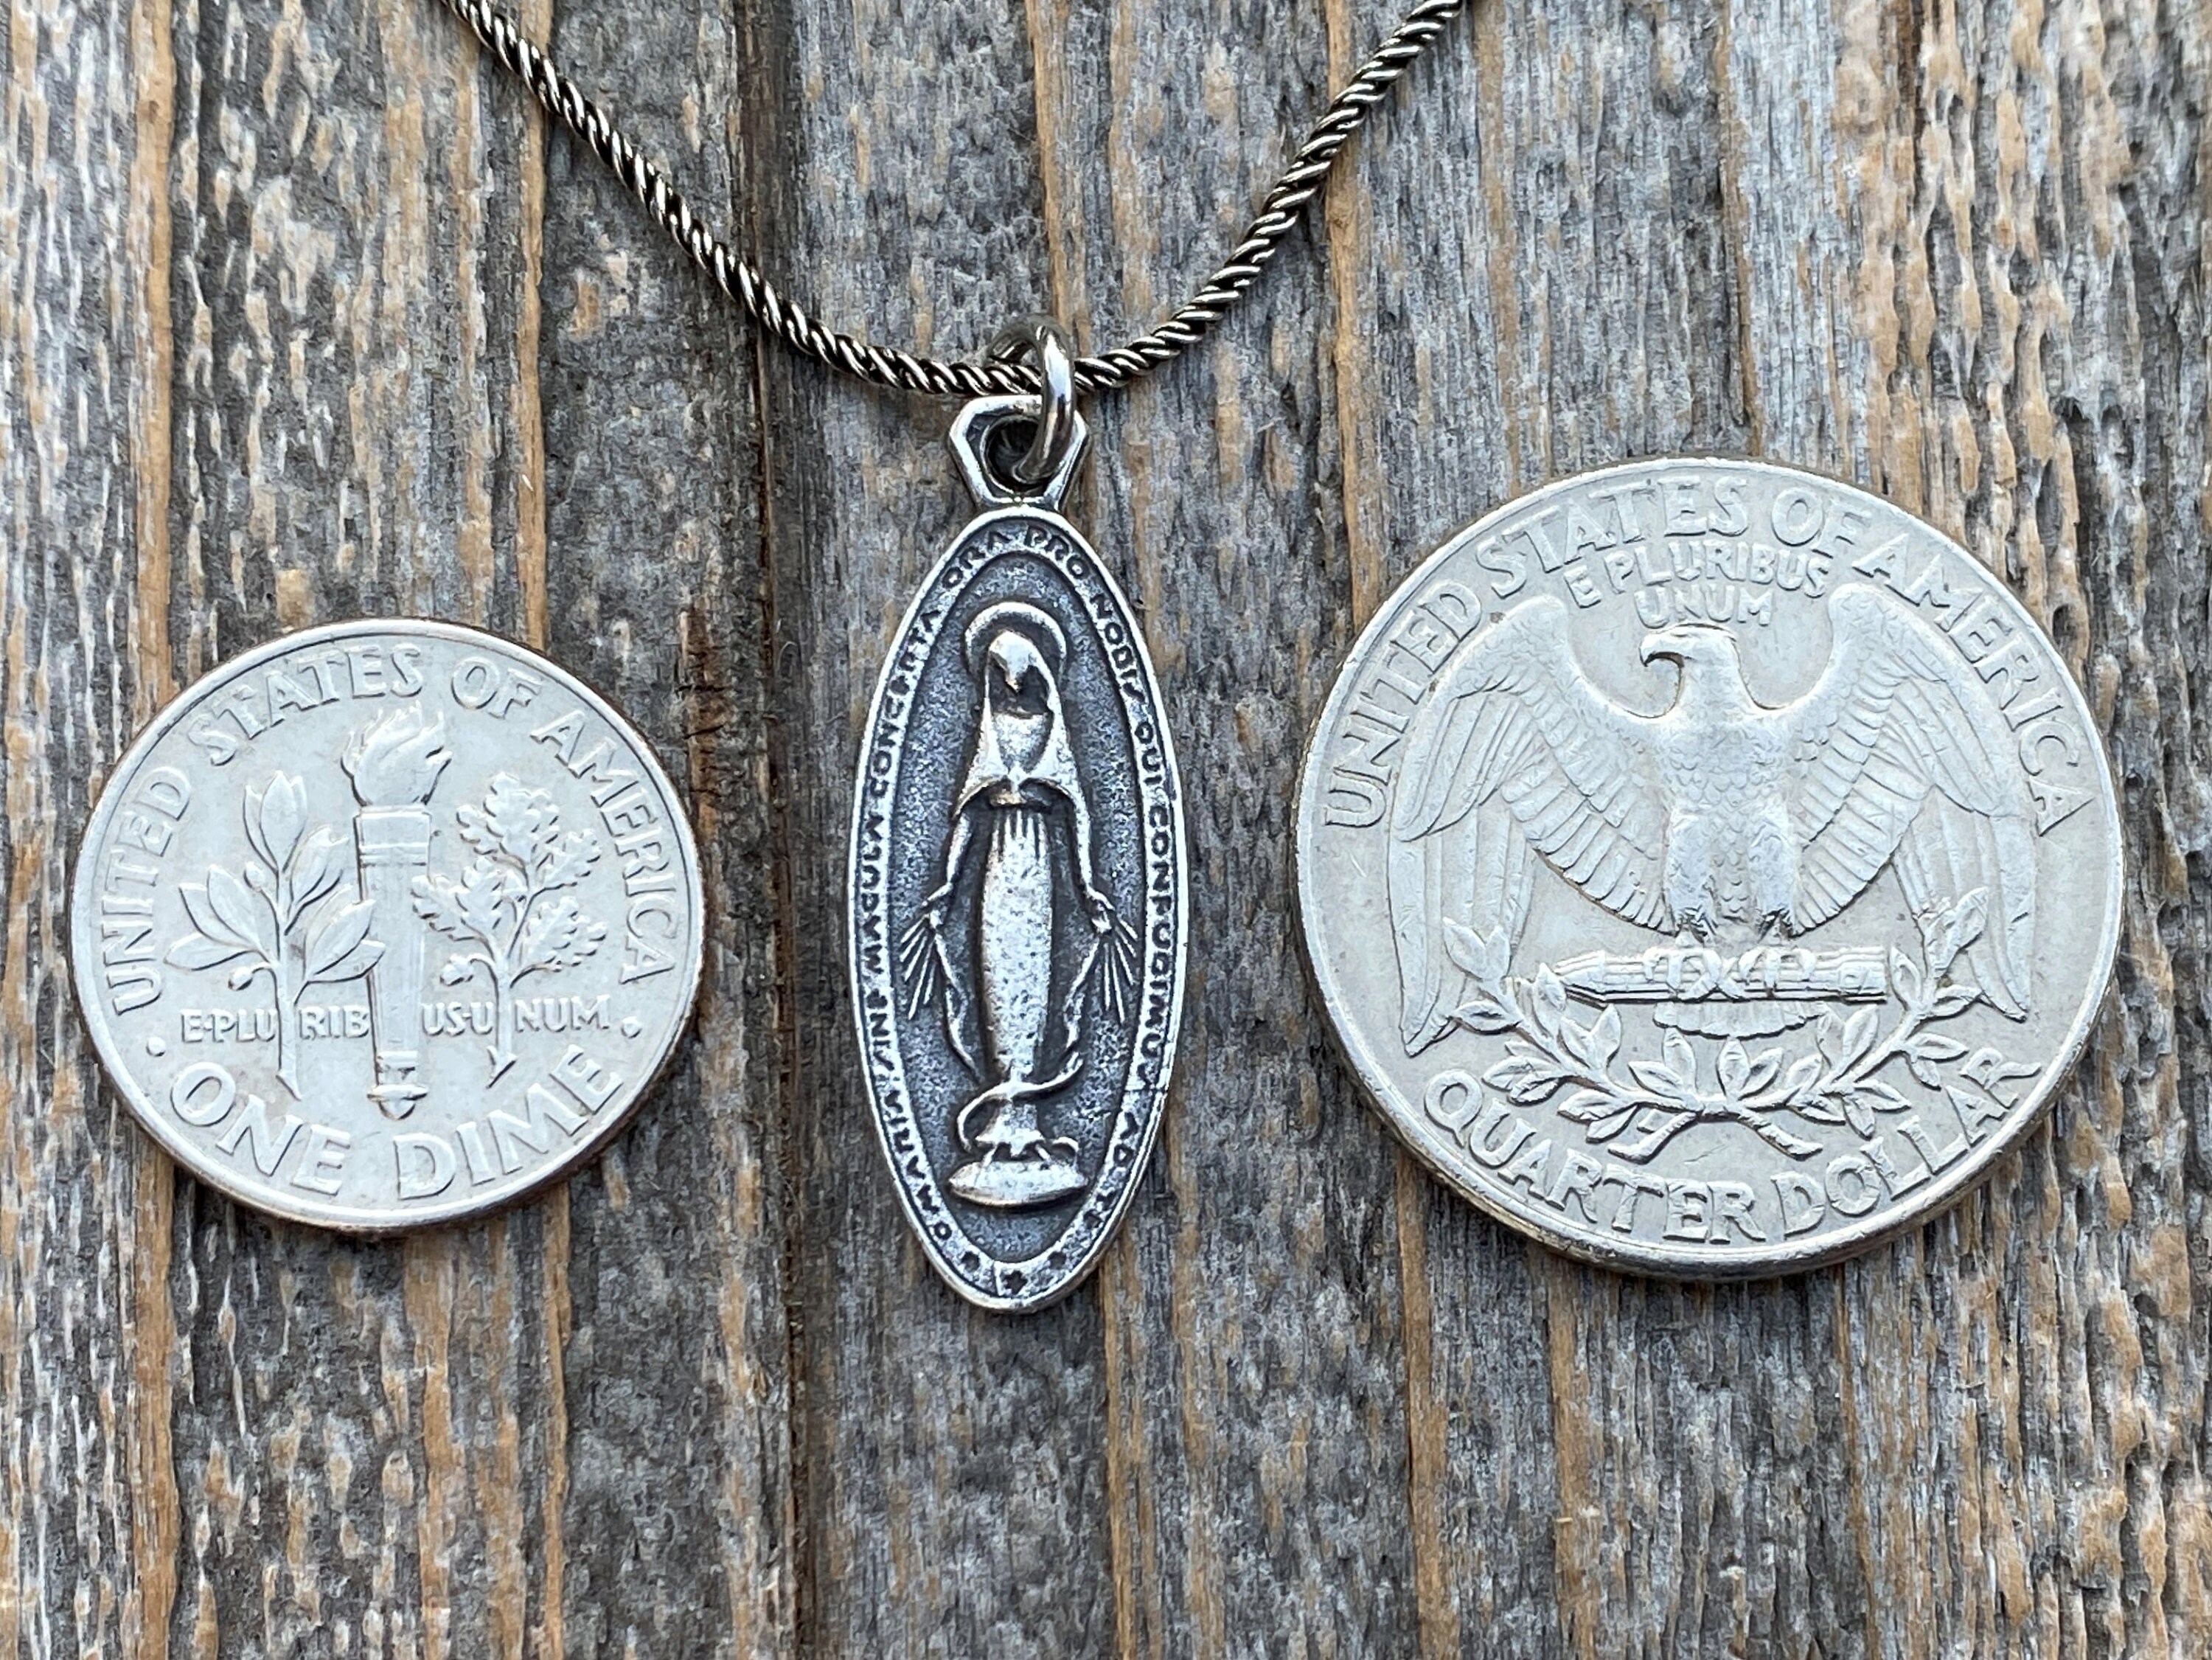 Caritas et Fides Bulk Pack of 10 - Miraculous Medal Pendant - 1 Silver Oxidized with Blue Enamel Accent Miraculous Medals Pendant for Necklace